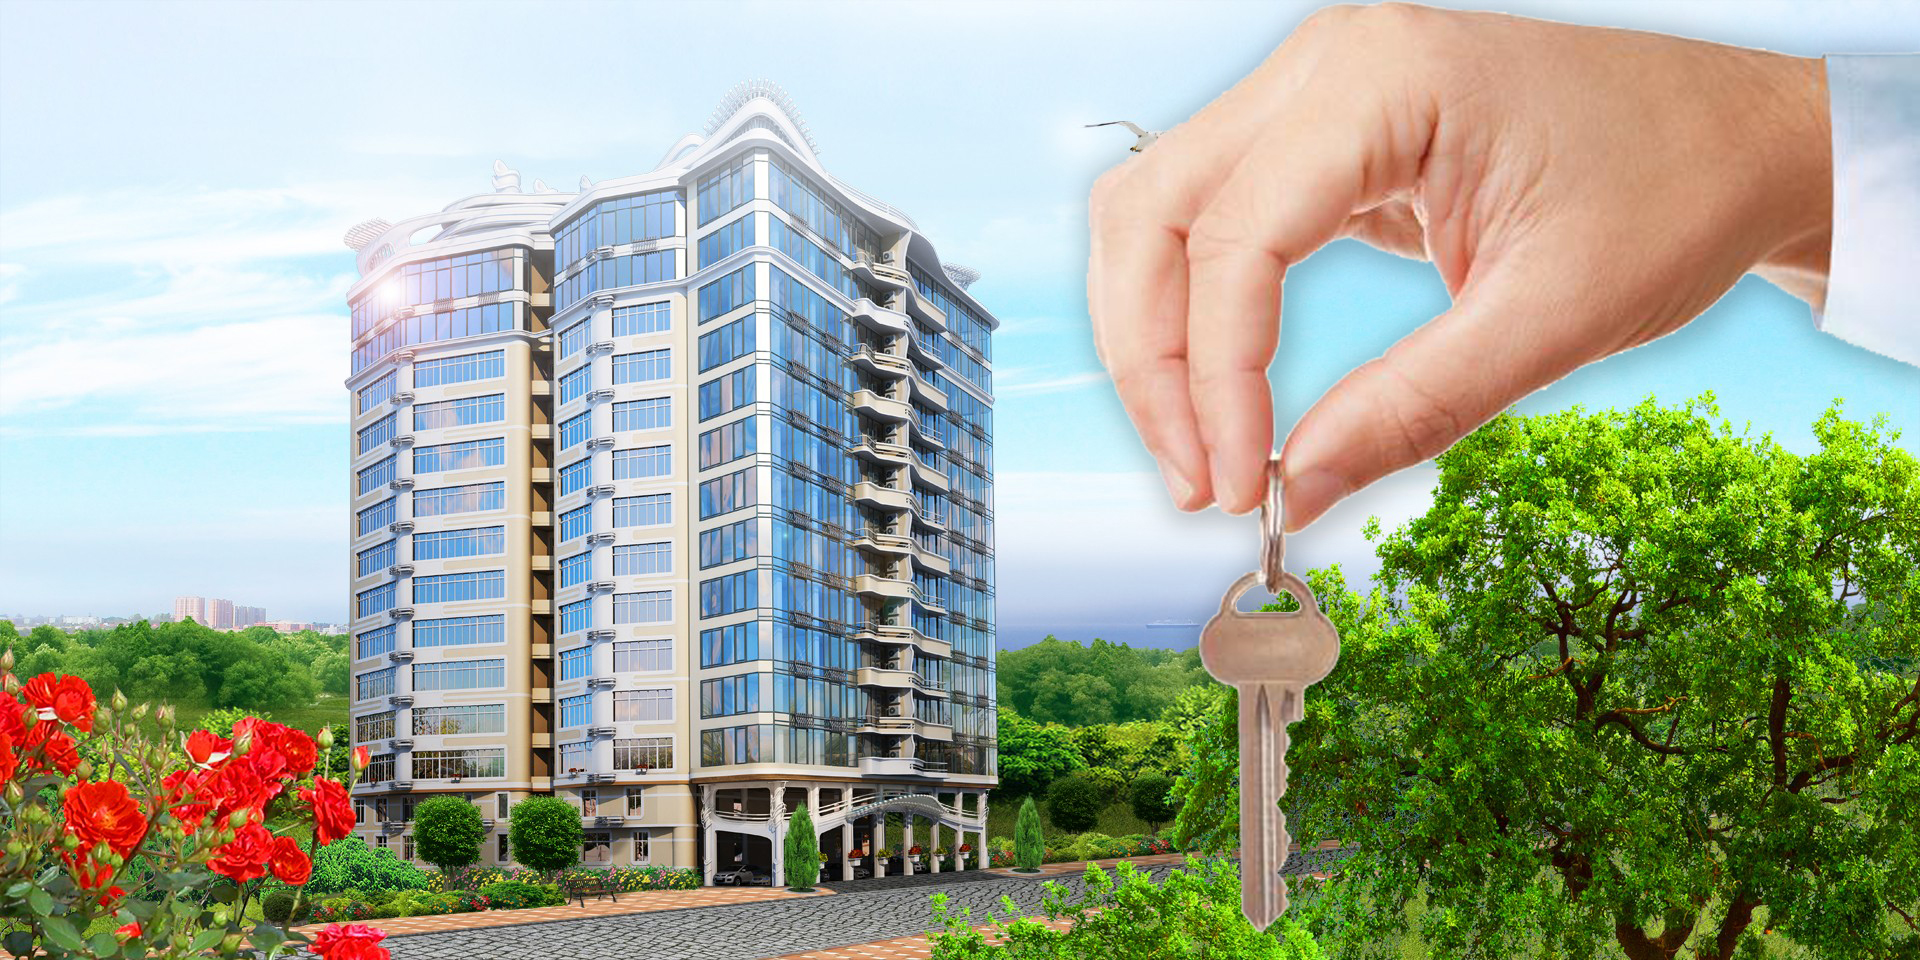 Дополнительная жилплощадь. Многоэтажка в руках. Ключи от квартиры в многоэтажке. Ключи от новой квартиры. Недвижимость элитная ключи.